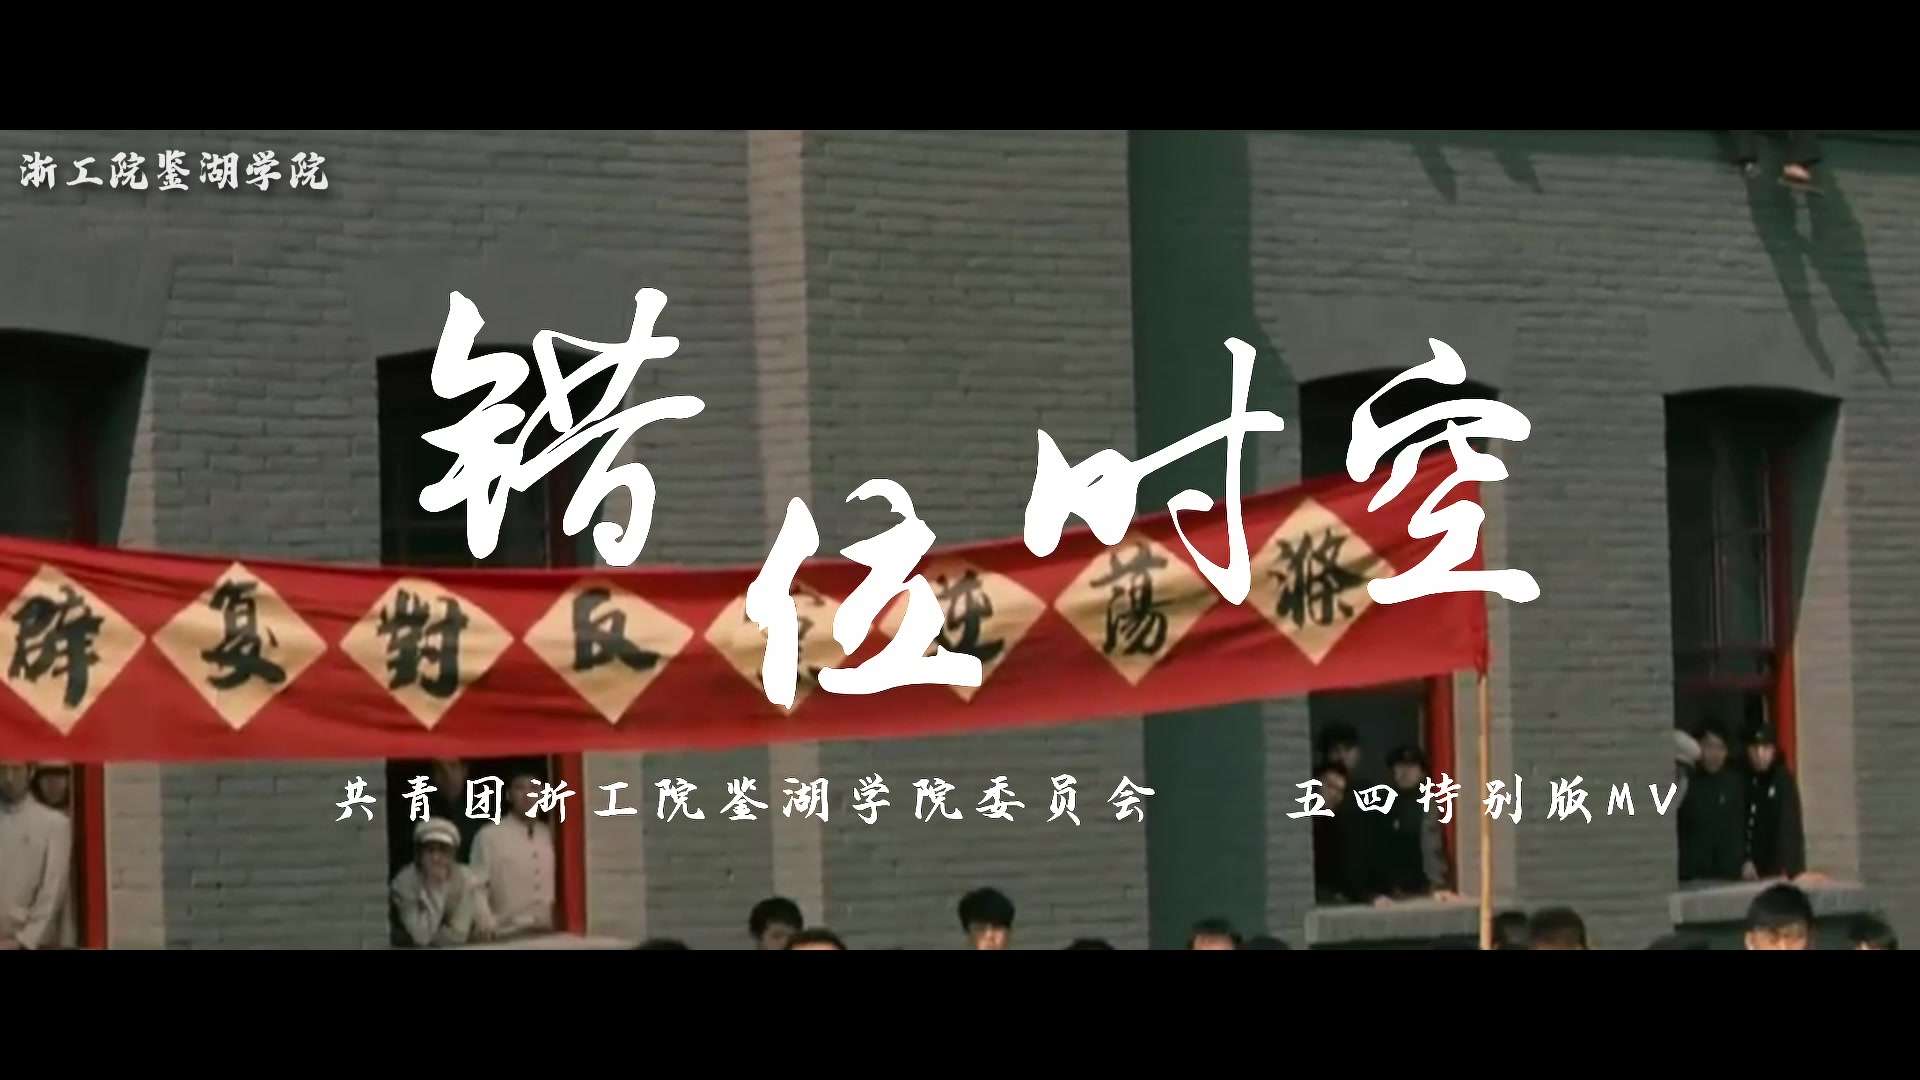 《错位时空》—浙江工业职业技术学院鉴湖学院 五四特别MV